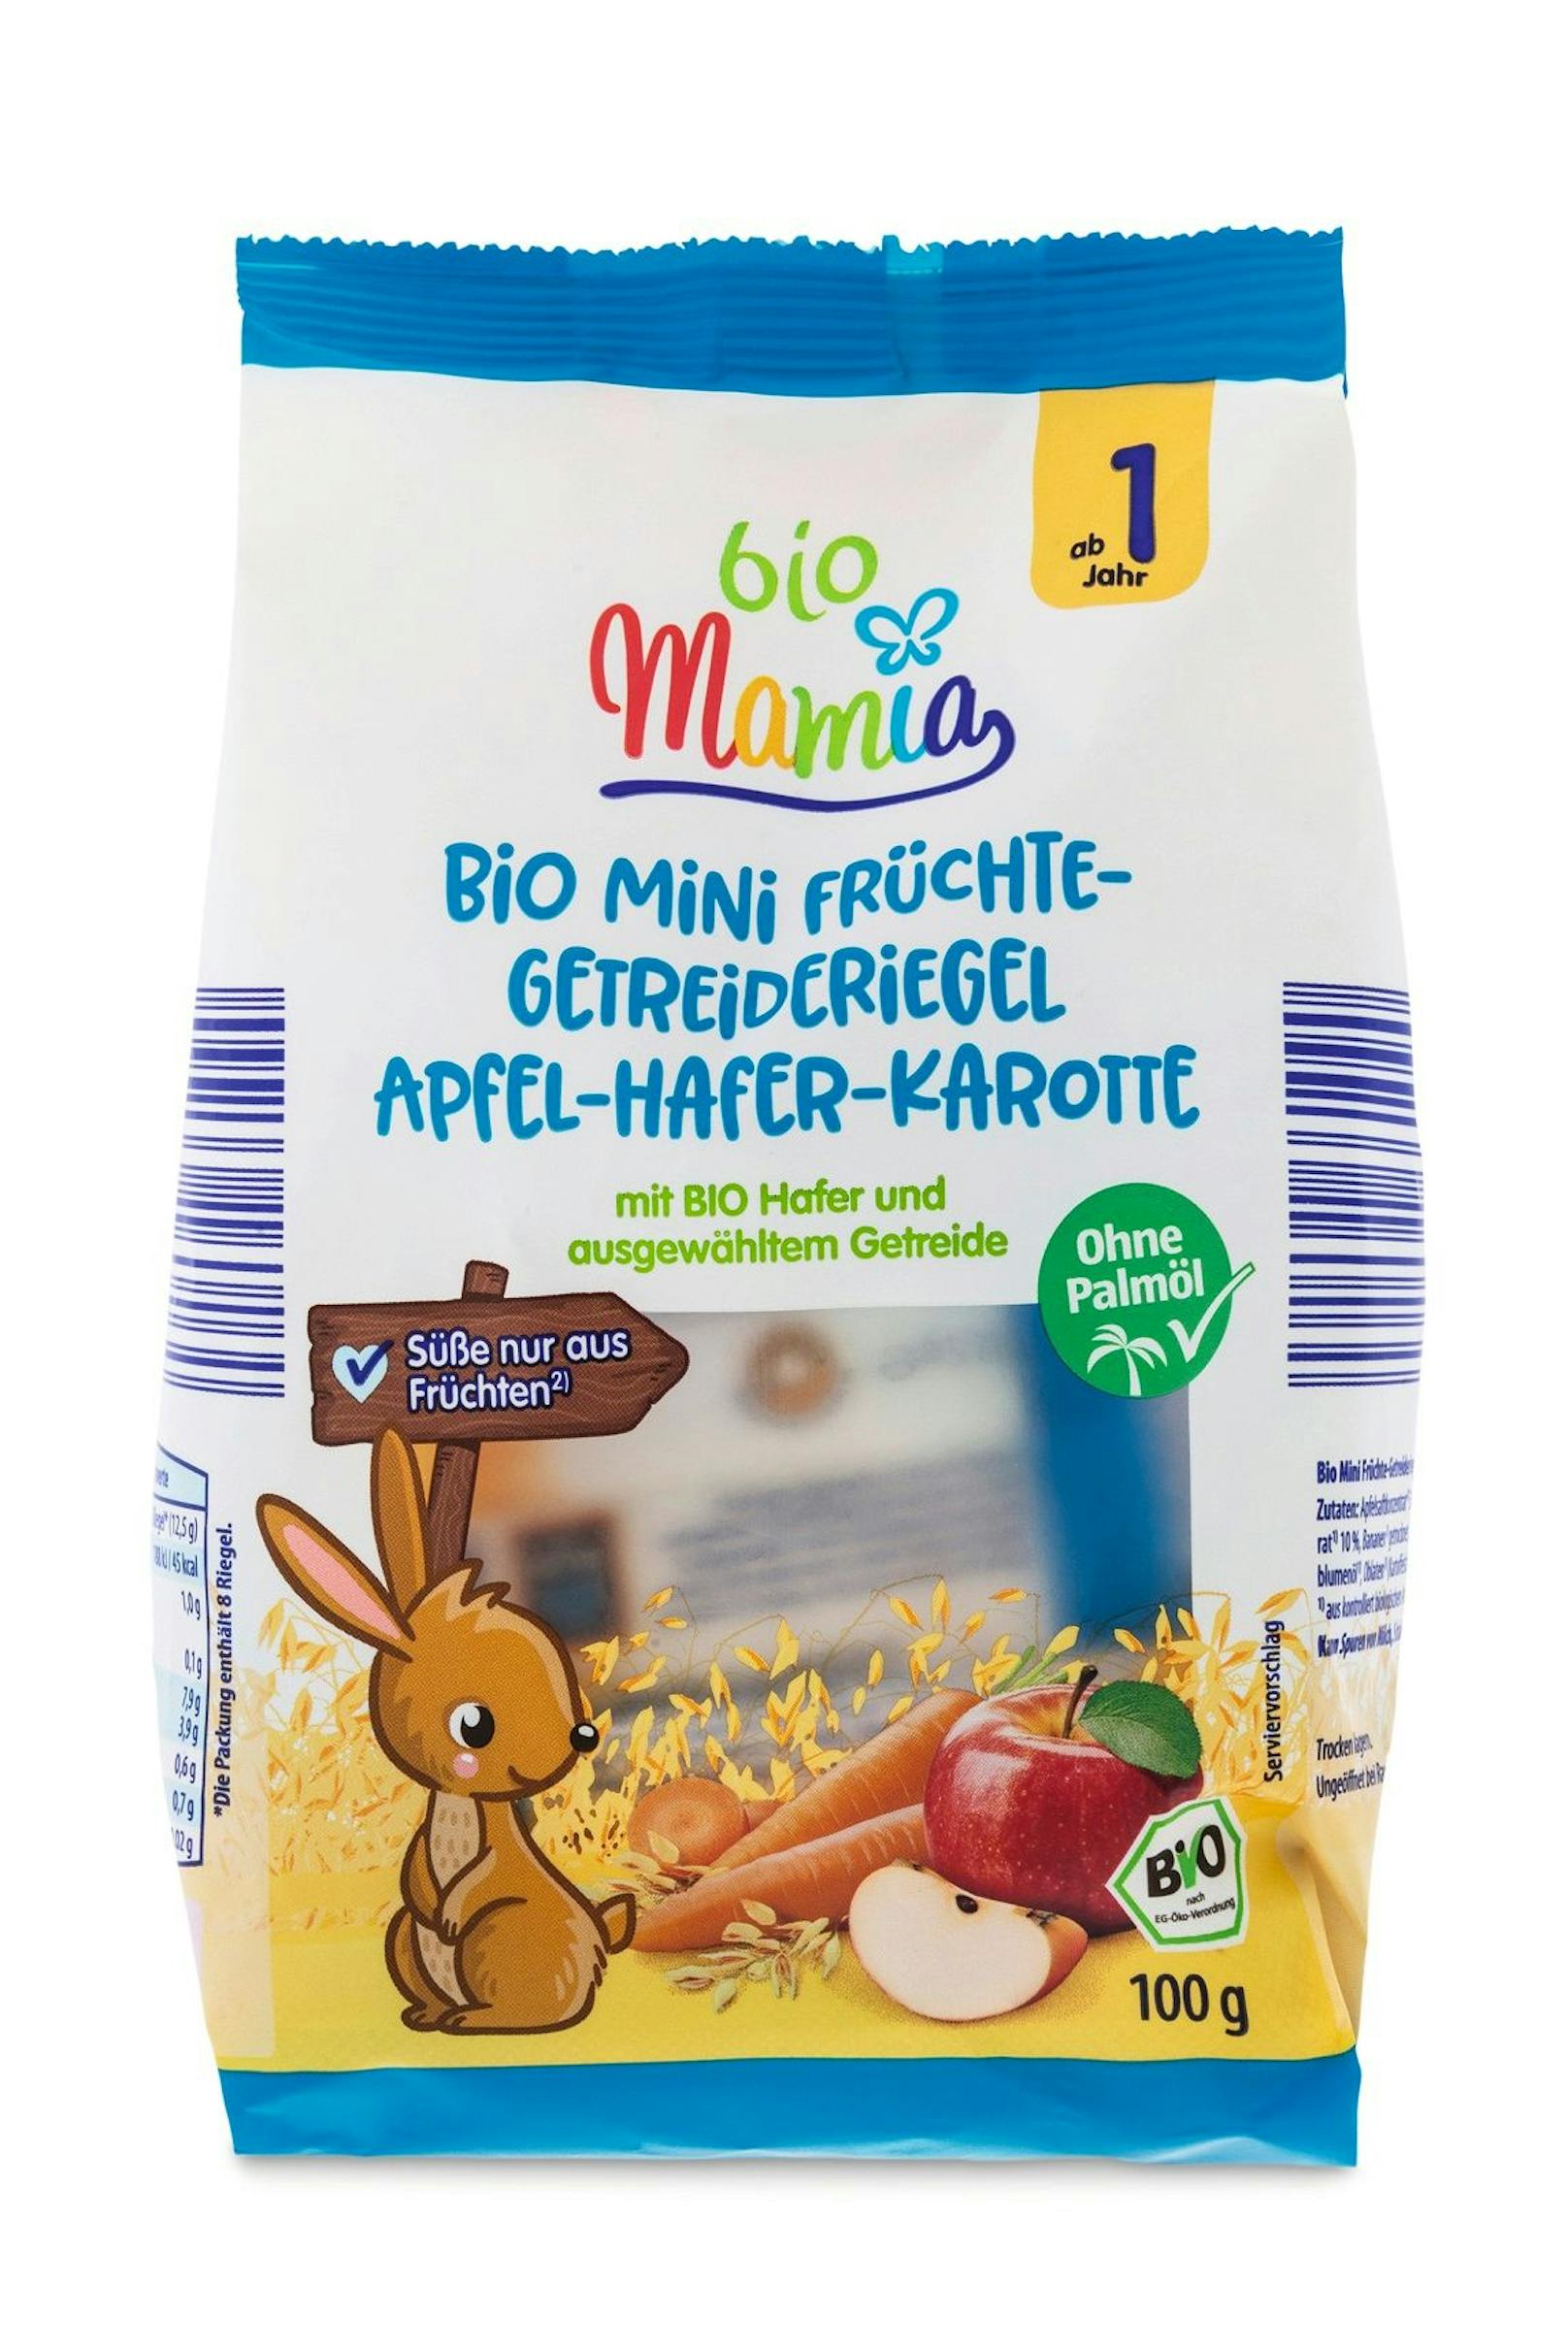 Hofer hat jetzt die neue Baby-Nahrung namens "Mamia" im Sortiment.